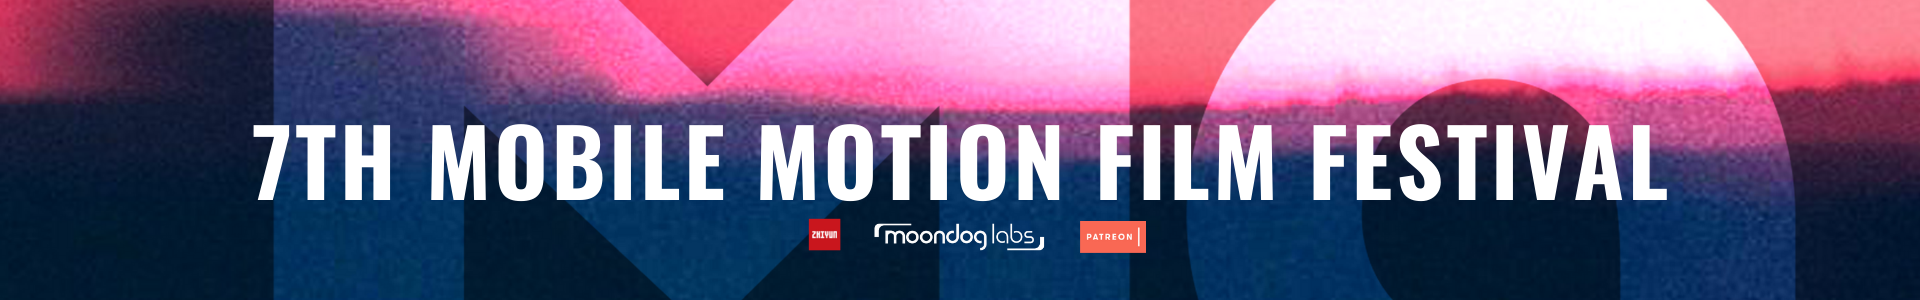 Mobile Motion Film Festival 2021